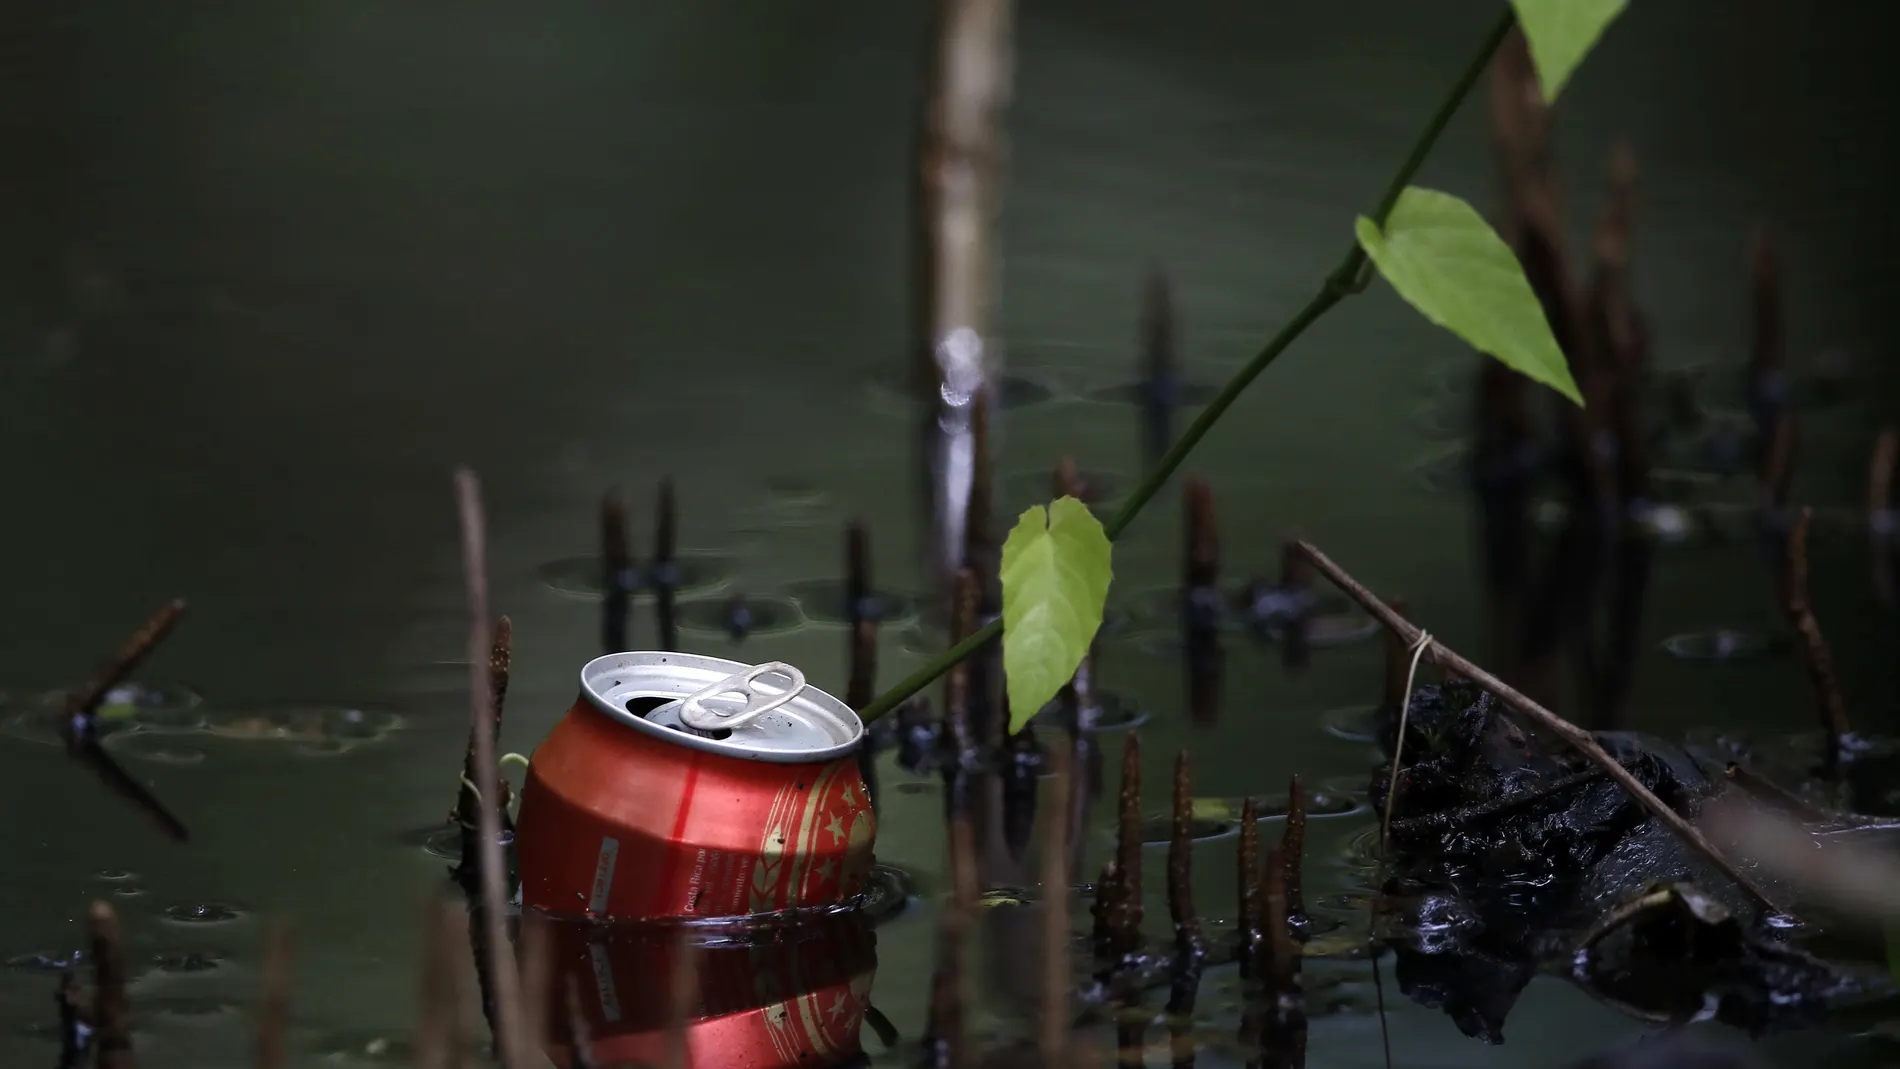 Fotografía de basura en un manglar en la Zona de Baja Mar, que subsiste por las aguas costeras de la zona costera del pacífico central de Costa Rica